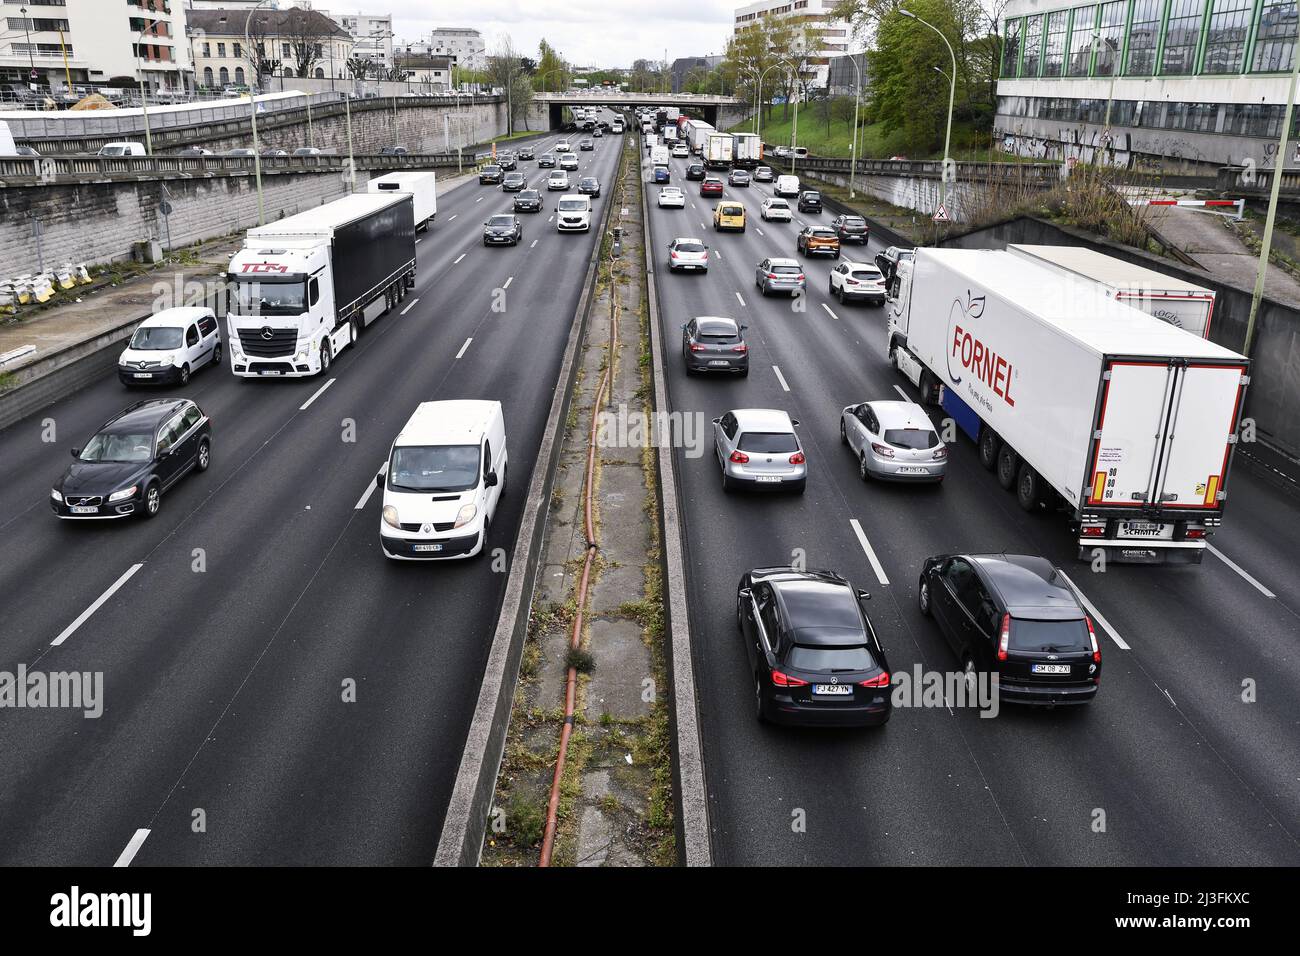 Boulevard Périphérique - Porte de Vincennes - Paris - France Stock Photo -  Alamy